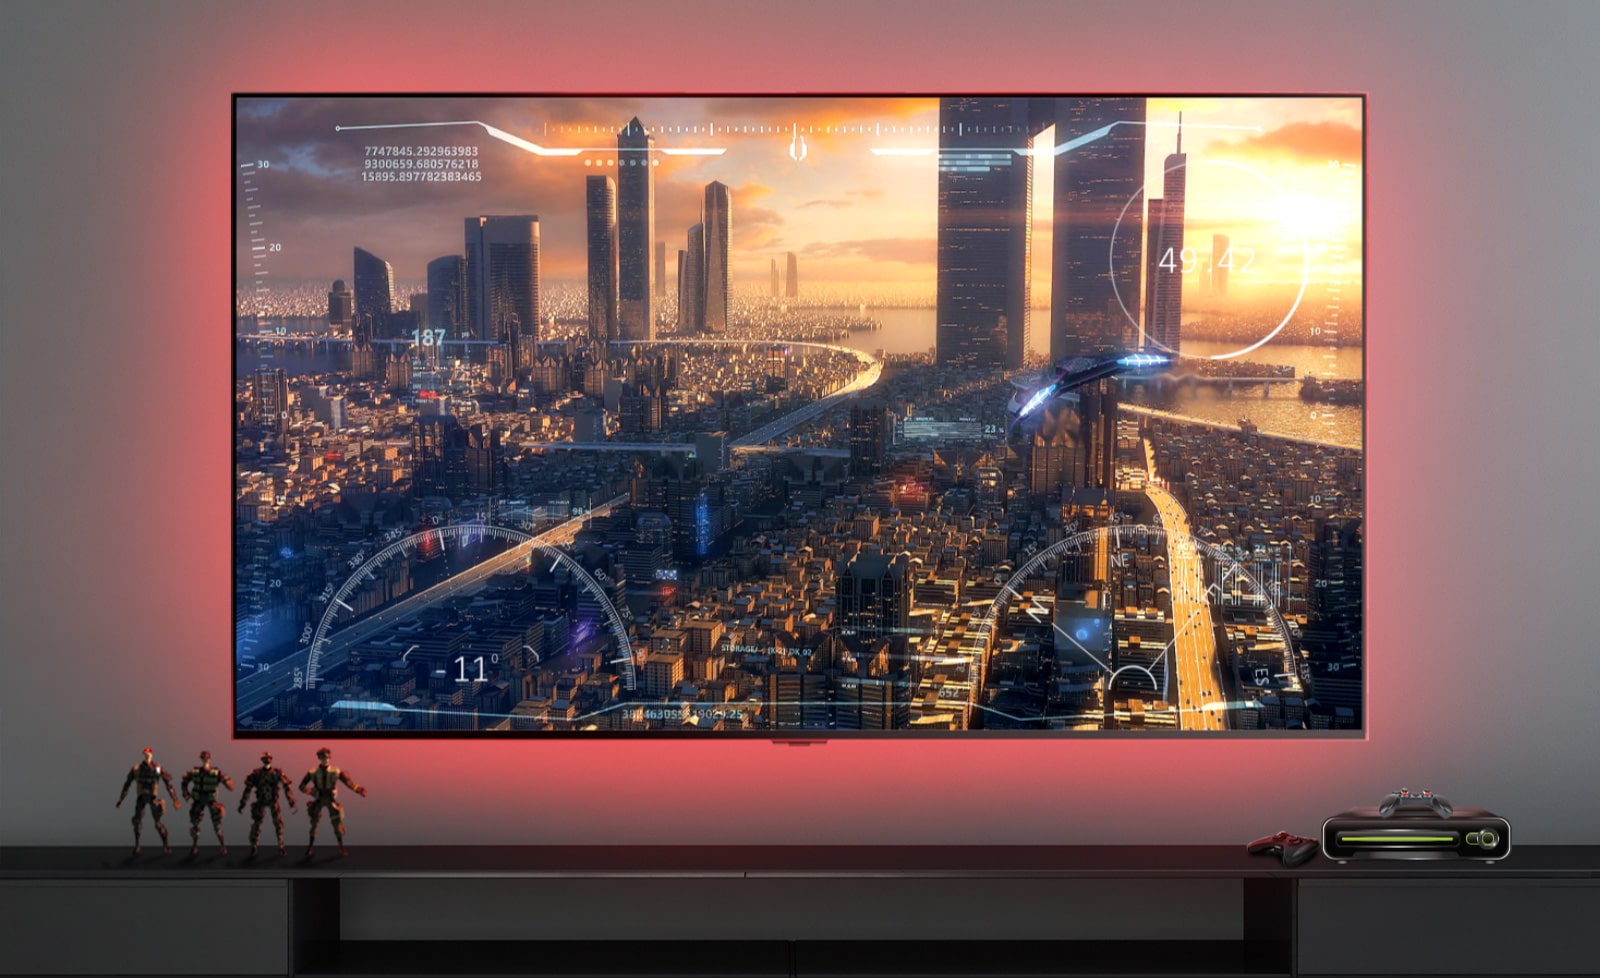 סצנה של משחק של חללית מעופפת מעל עיר מוצגת במסך טלוויזיה (הפעילו את הסרטון).